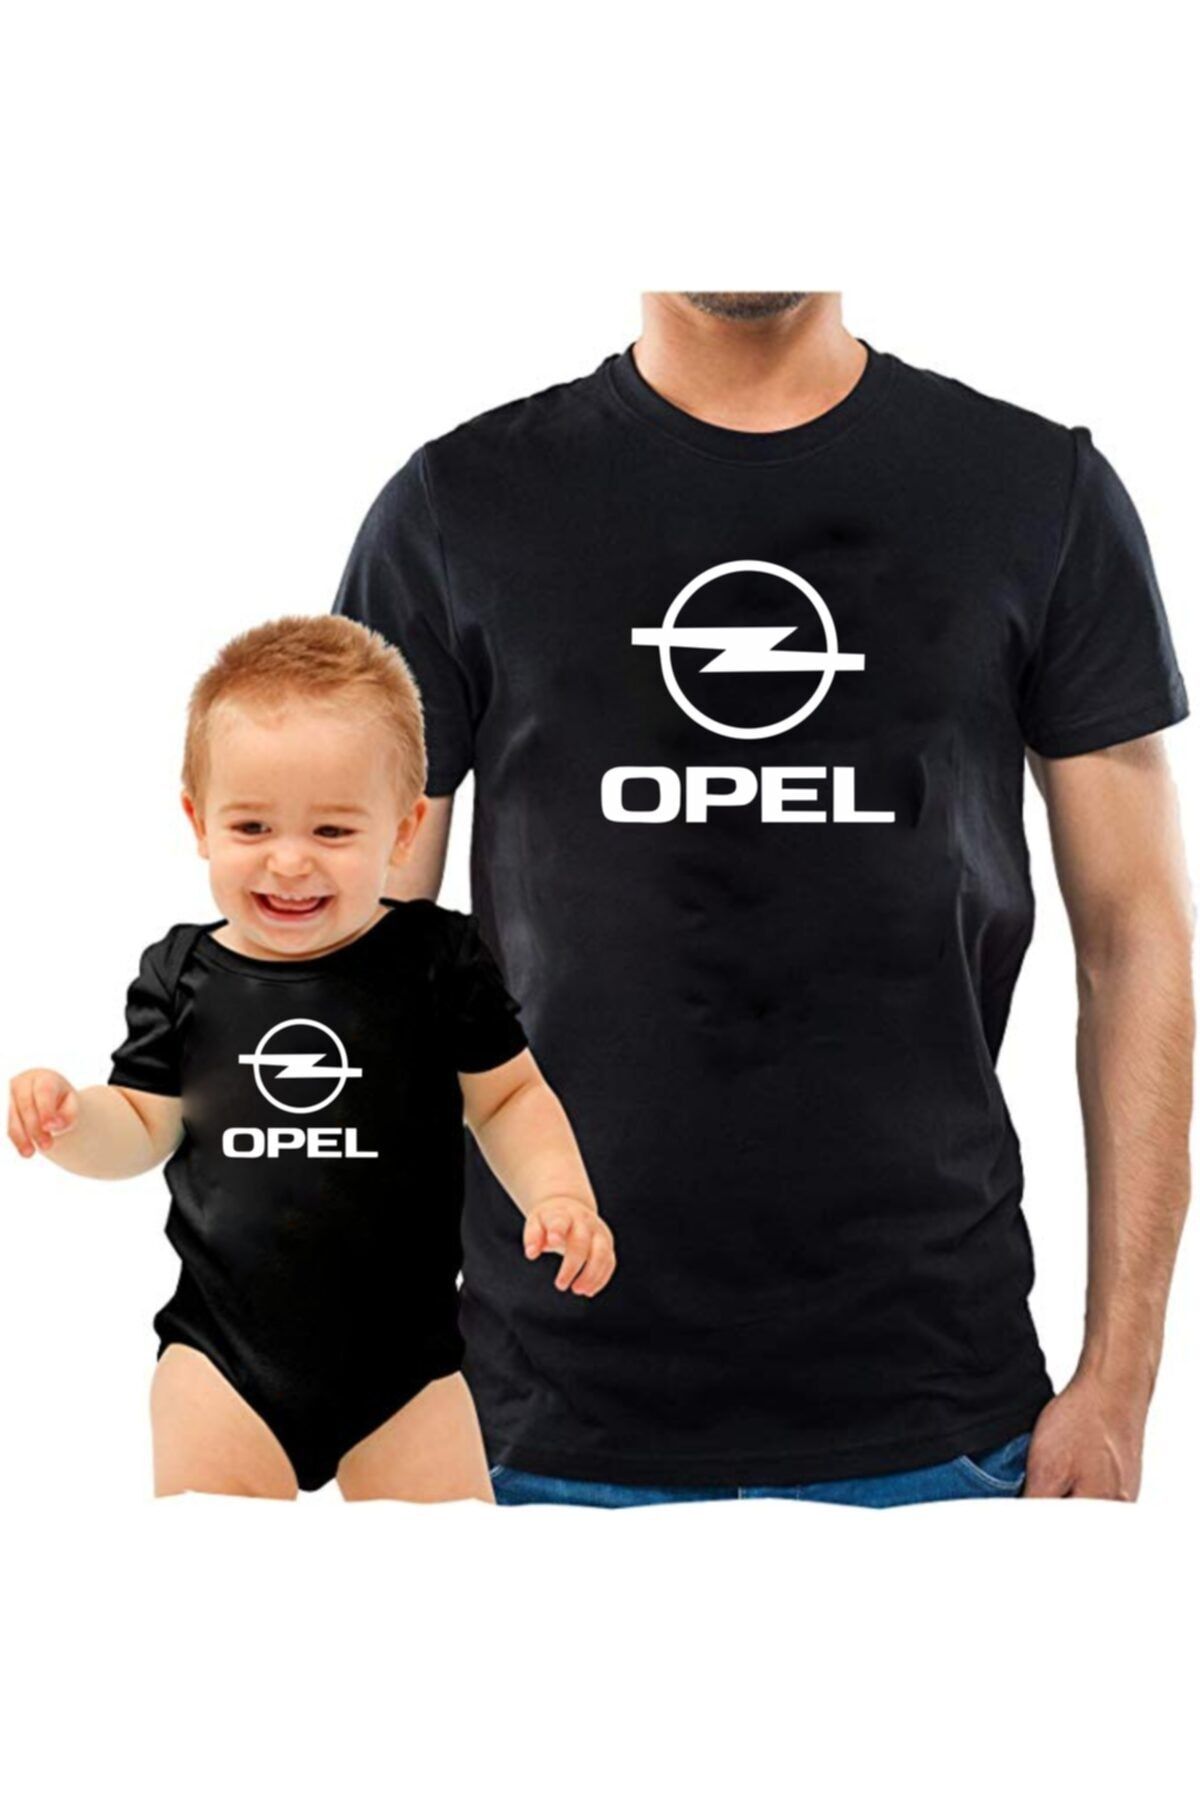 venüsdijital Opel Baba Oğul Siyah Tshirt Zıbın (tekli Üründür Kombin Yapmak Için 2 Adet Sepete Ekleyiniz)